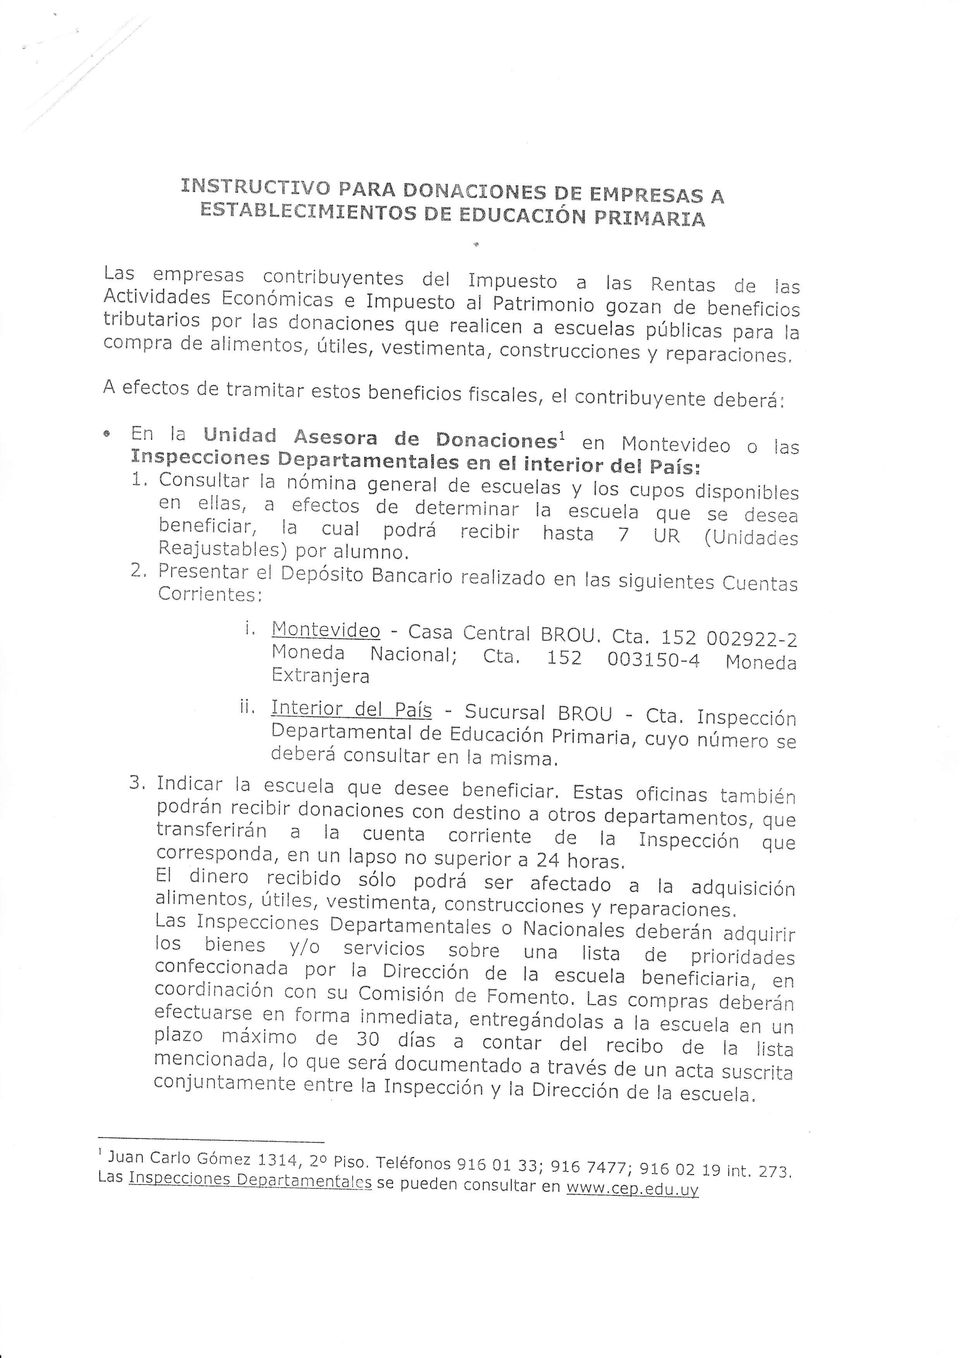 el contribuyente deberá: ' En la unidad Asesora de Donacionesl en Montevideo o ras rnspecciones Departamentares en er interior der país: 1.